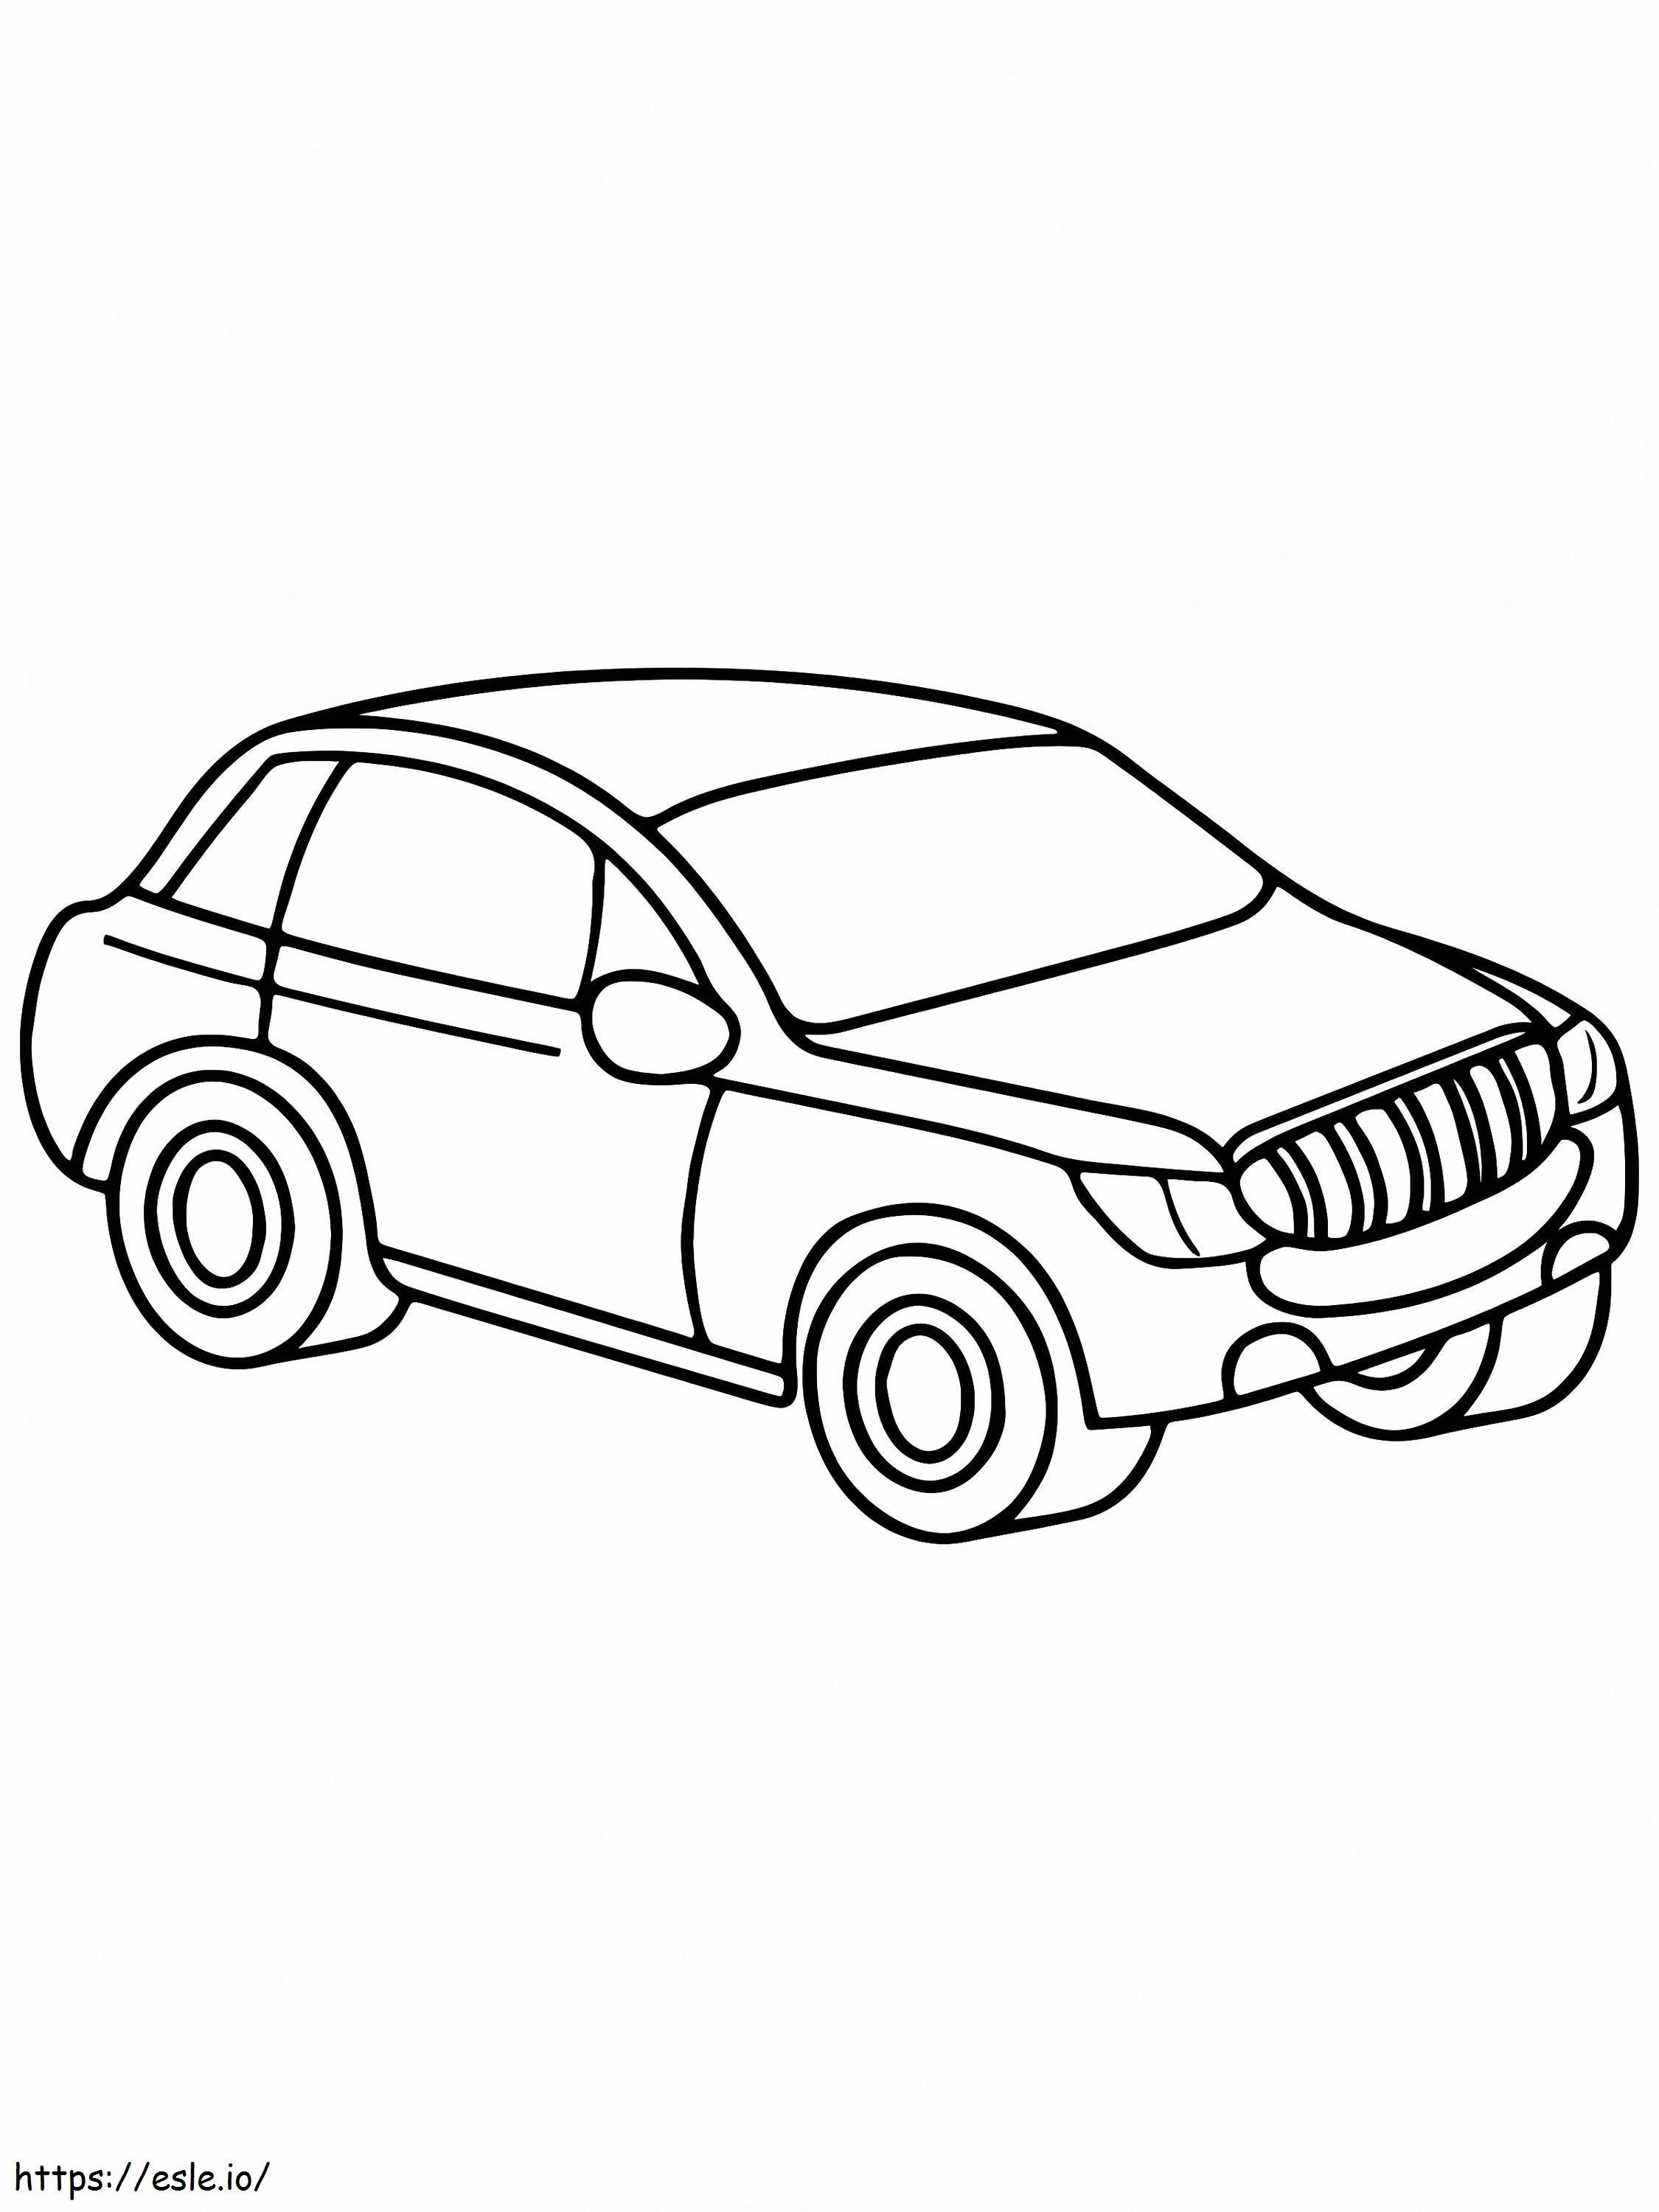 Limousinen-Autodesign ausmalbilder